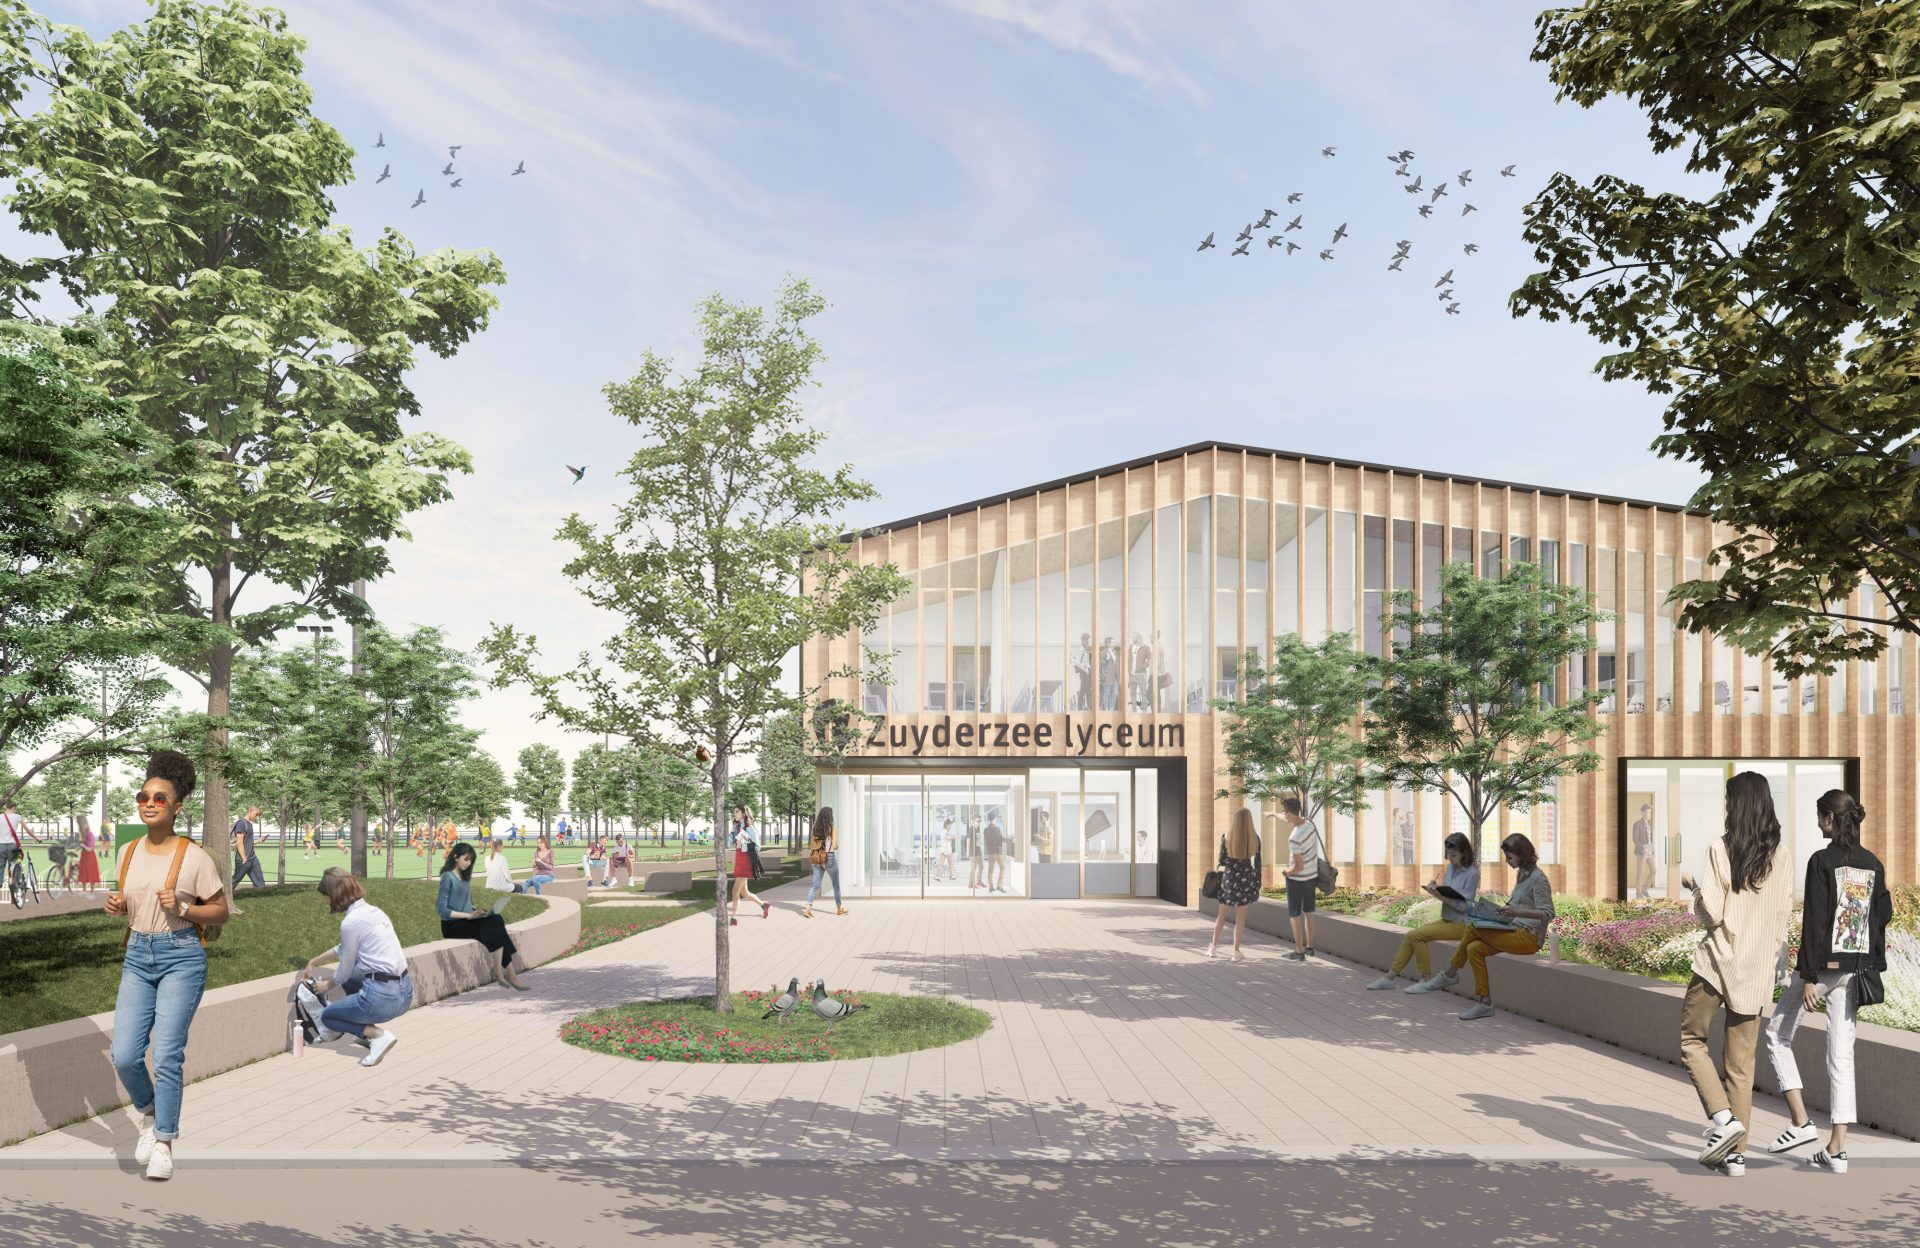 Het Zuyderzee Lyceum in Lemmer krijgt een splinternieuw duurzaam schoolgebouw